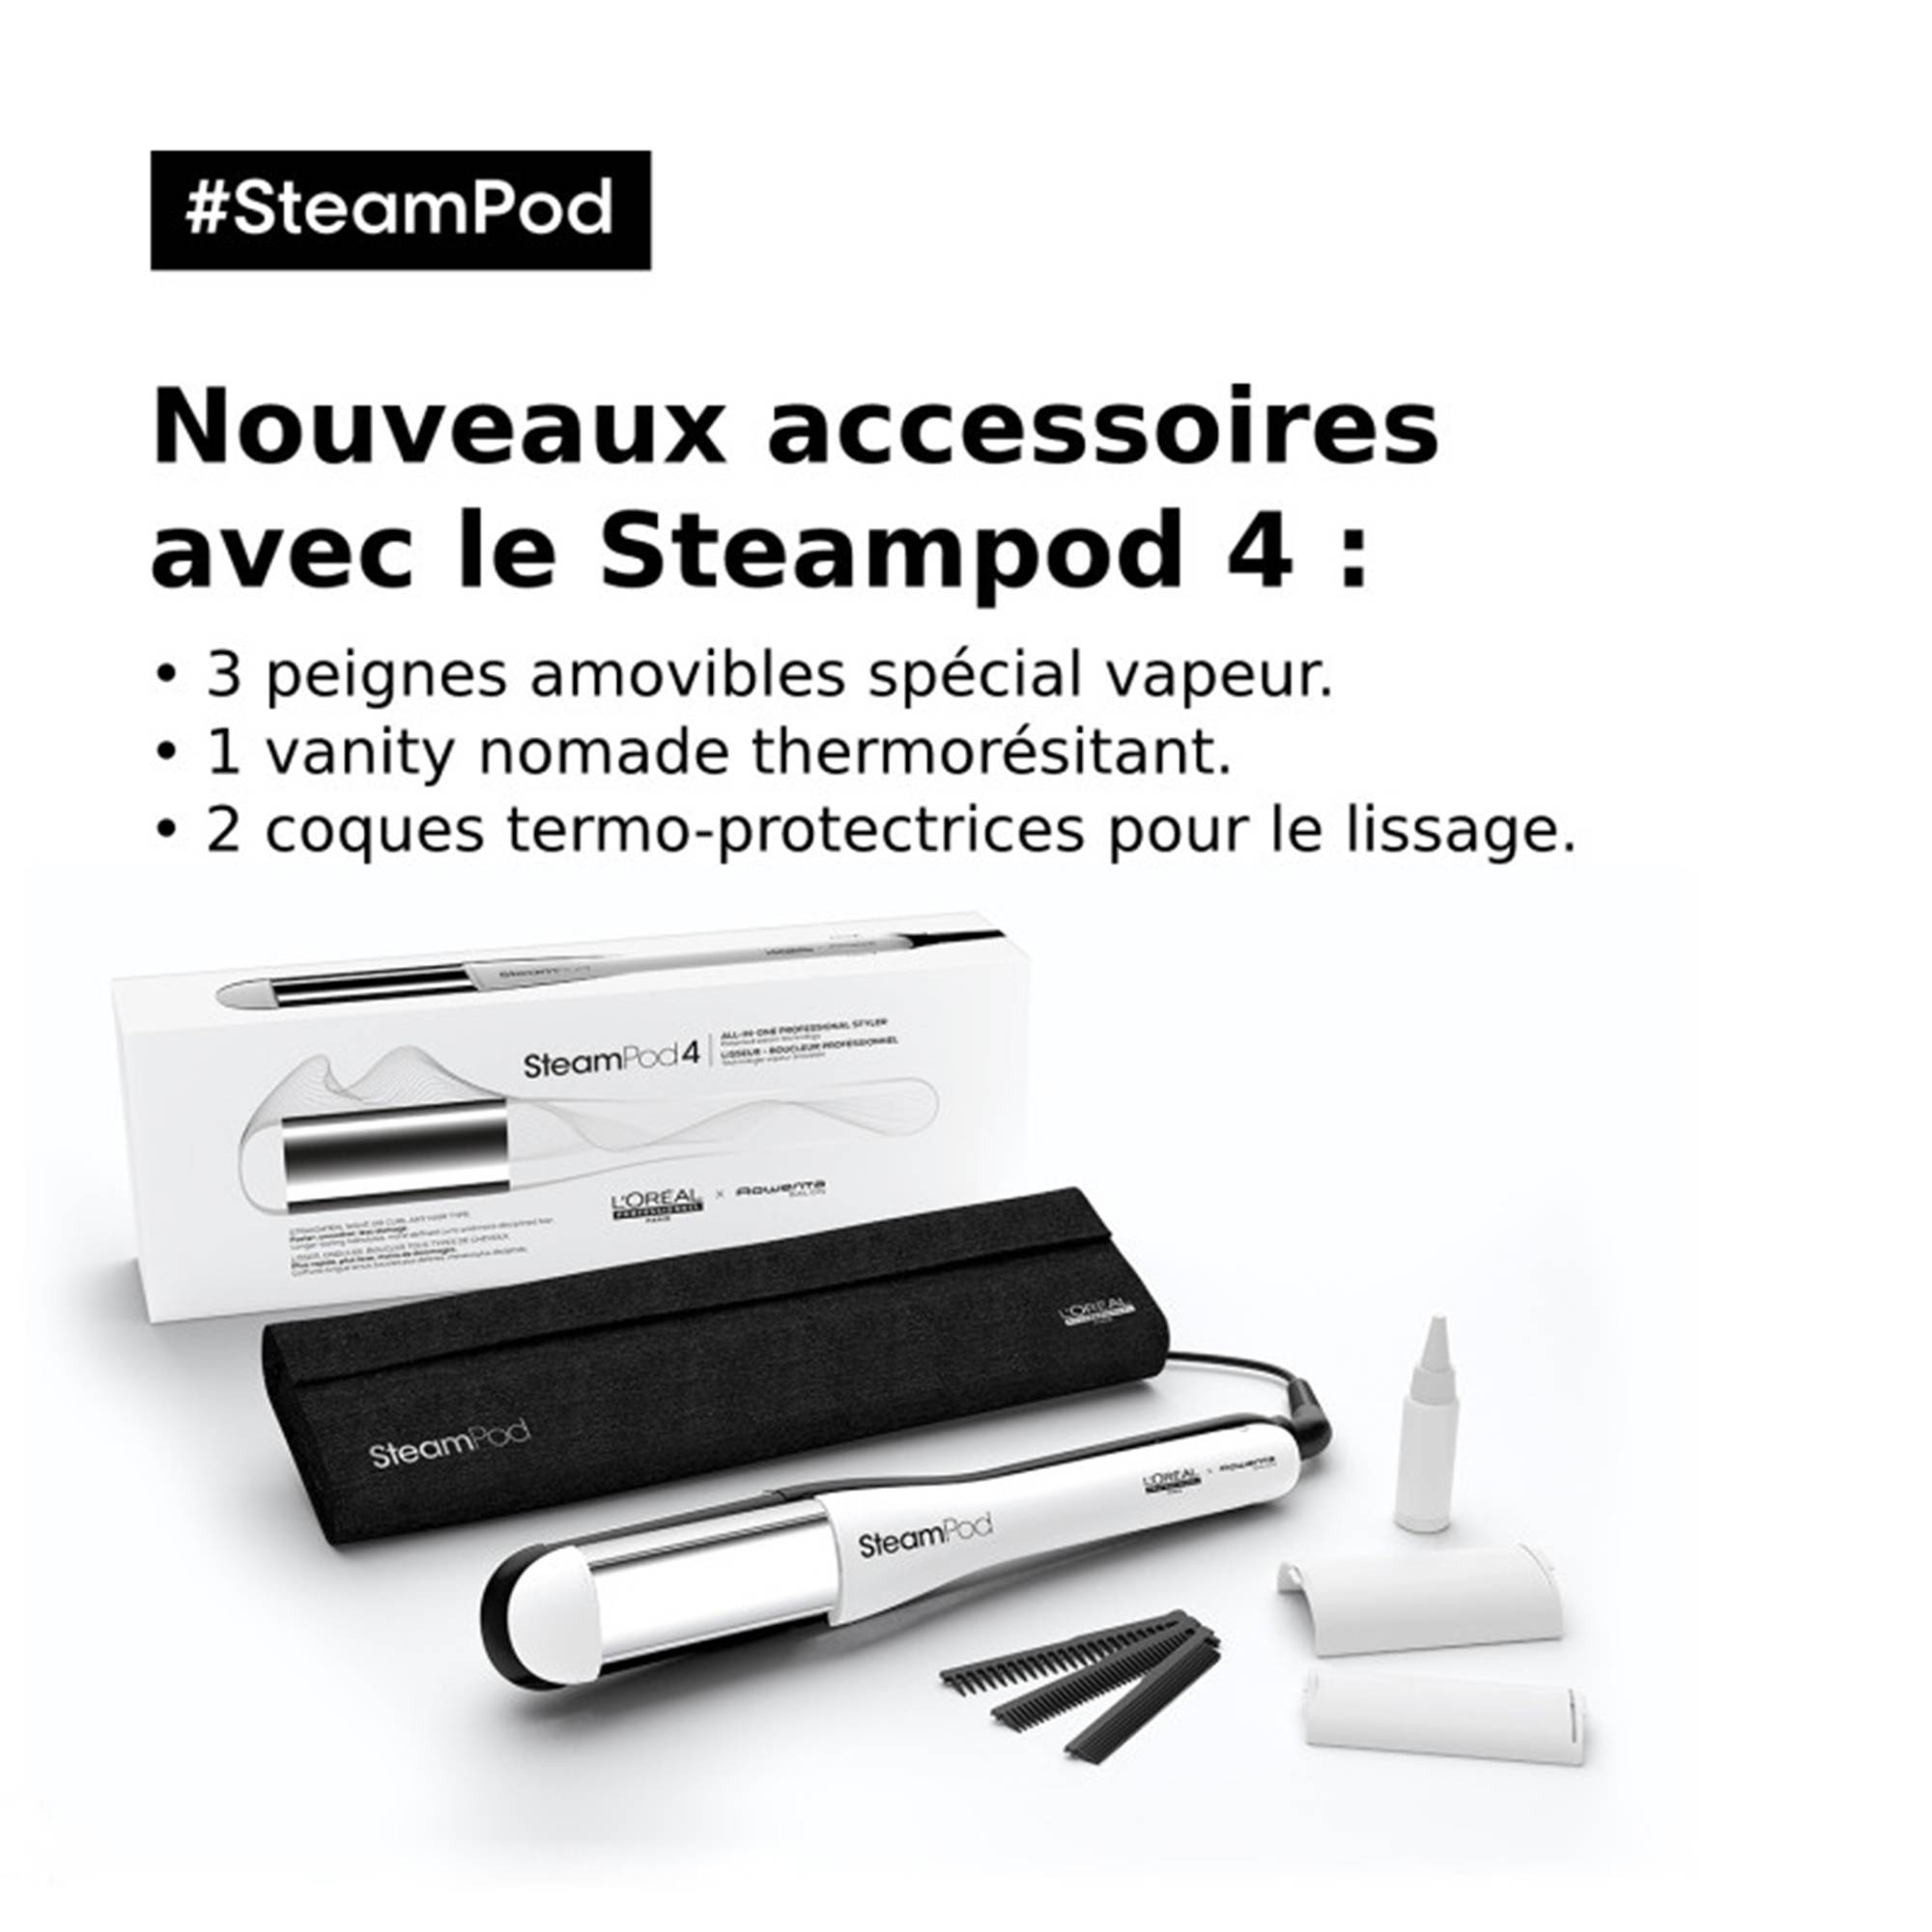 SteamPod 4 lisseur boucleur vapeur de la marque L'Oréal Professionnel - 8